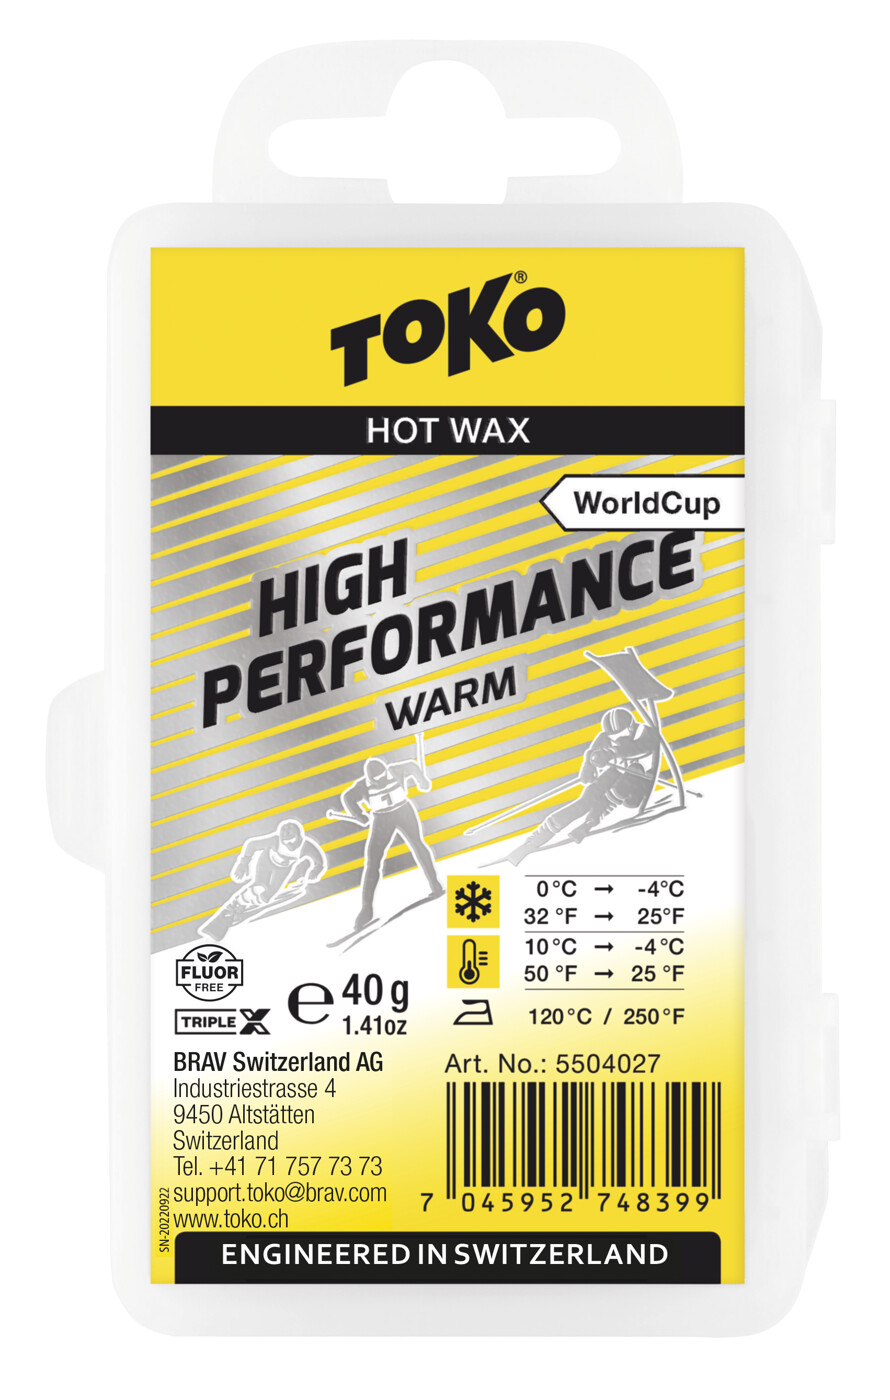 High Performance Hot Wax warm TOKO